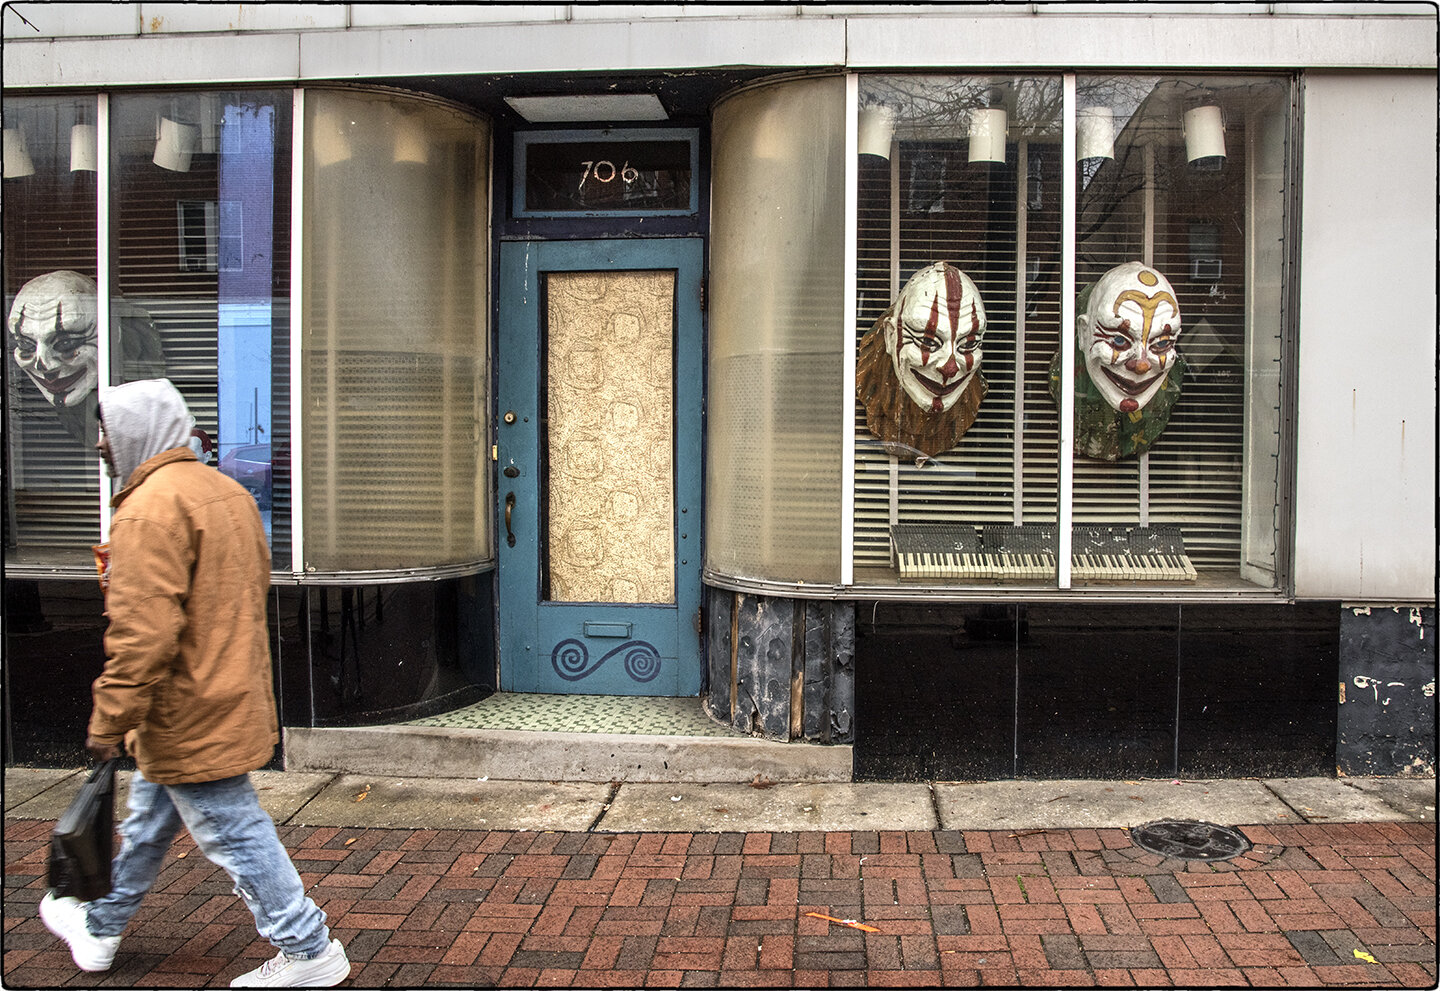 %22Clowns, Baltimore%22-Photo by Albert Ewing-Flat-Web Only-4136.jpg